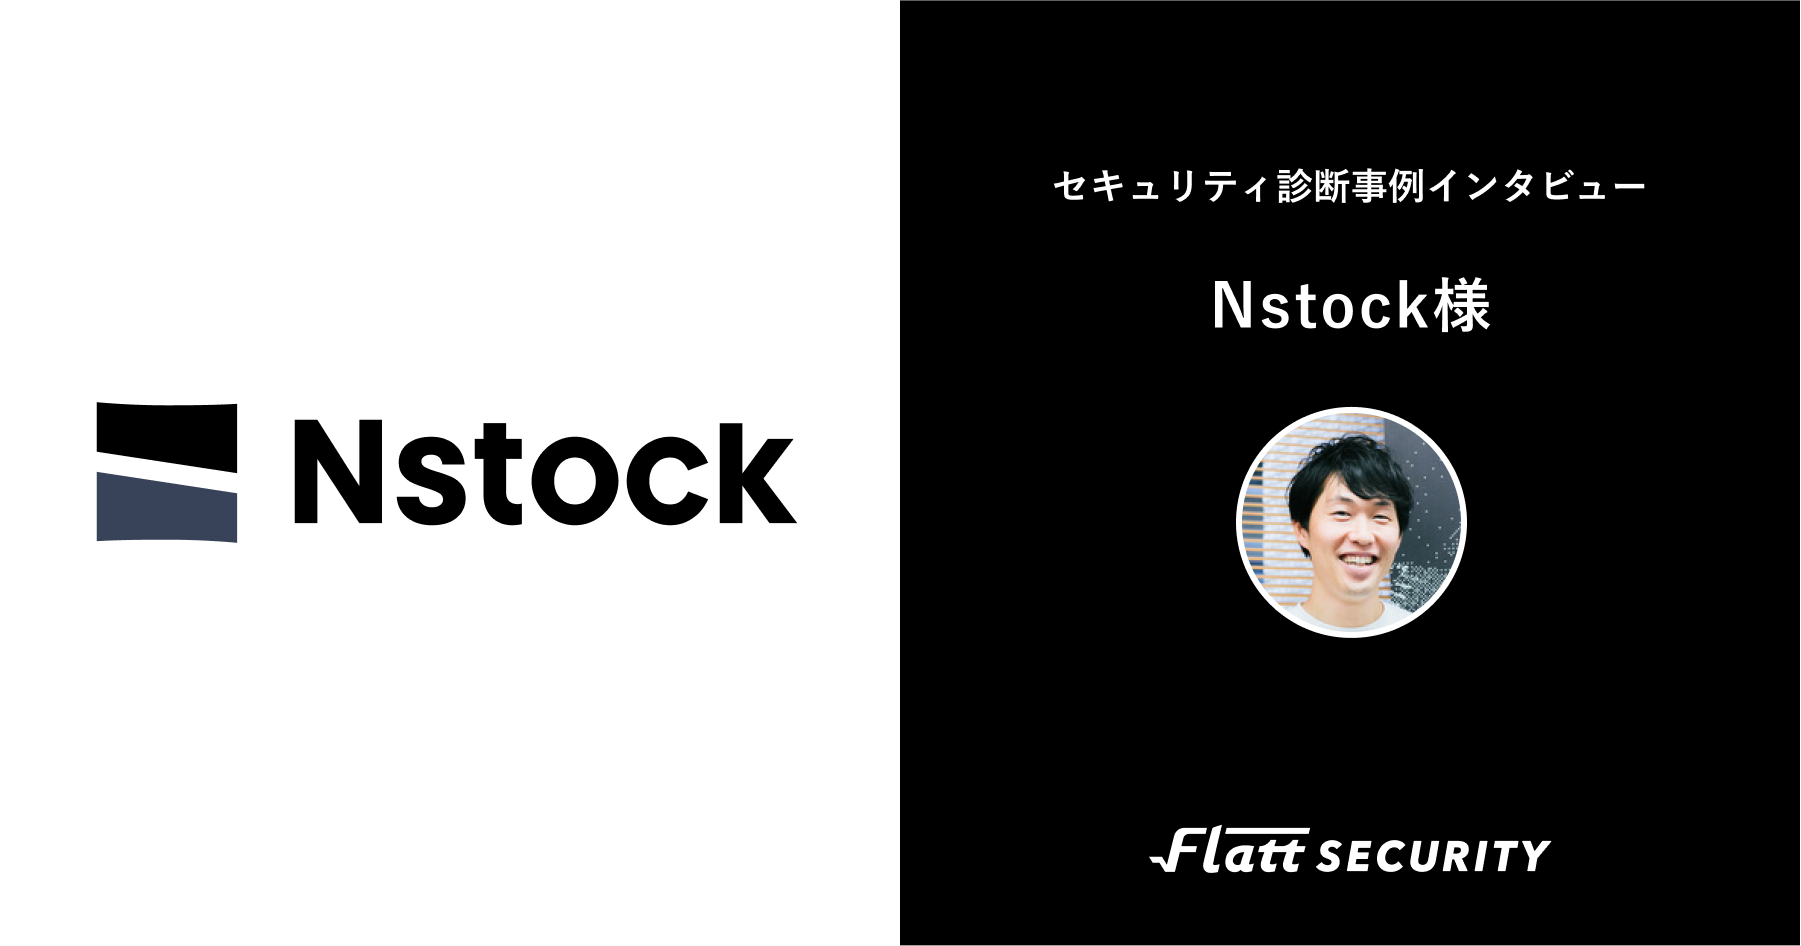 Nstock 0